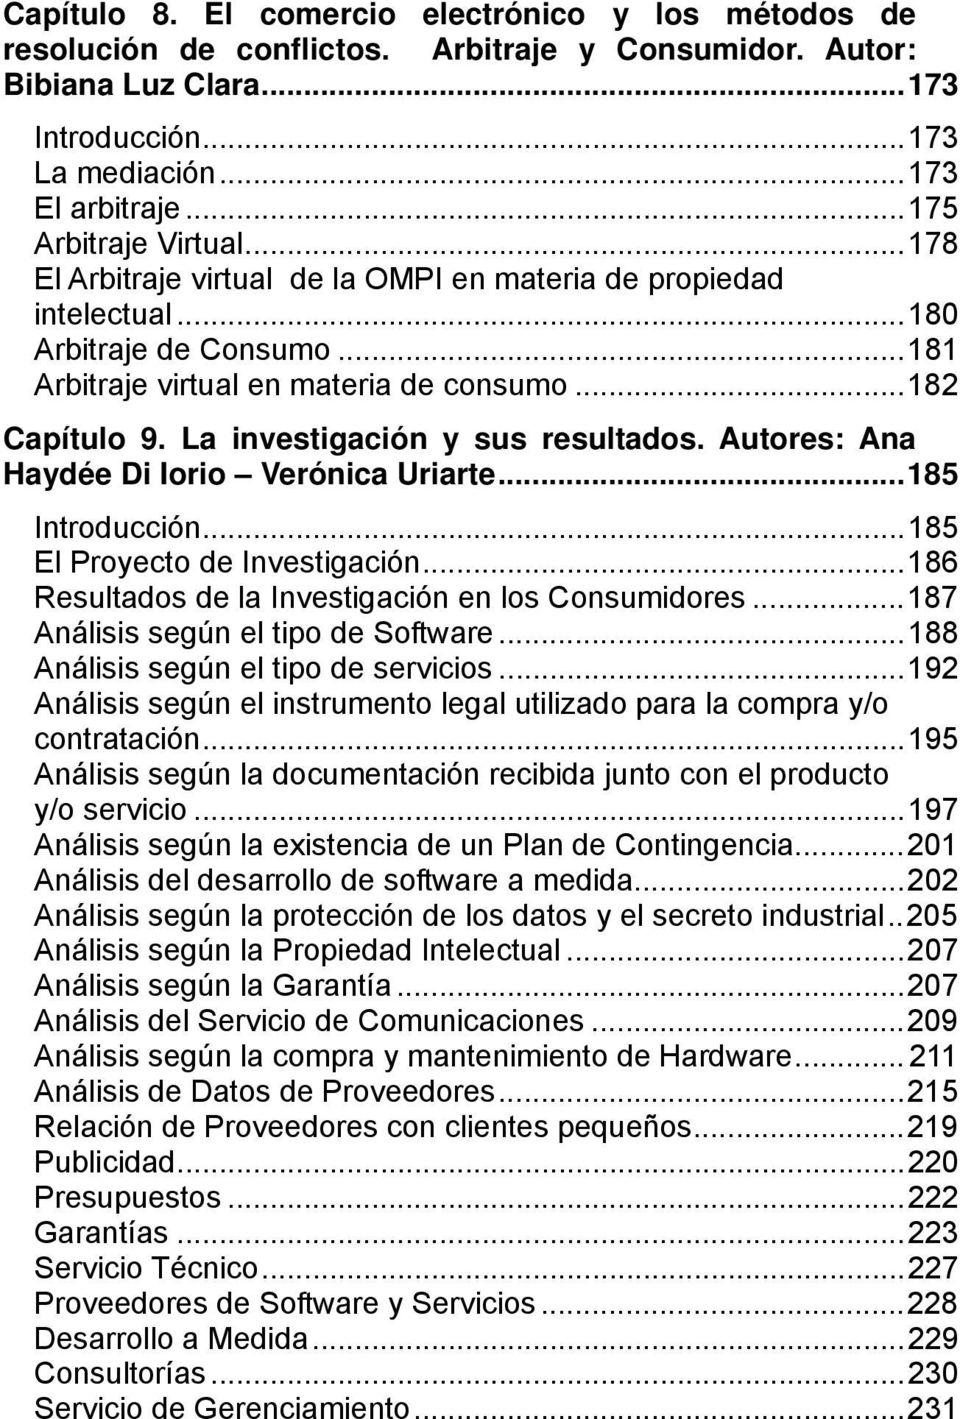 La investigación y sus resultados. Autores: Ana Haydée Di Iorio Verónica Uriarte...185 Introducción...185 El Proyecto de Investigación...186 Resultados de la Investigación en los Consumidores.